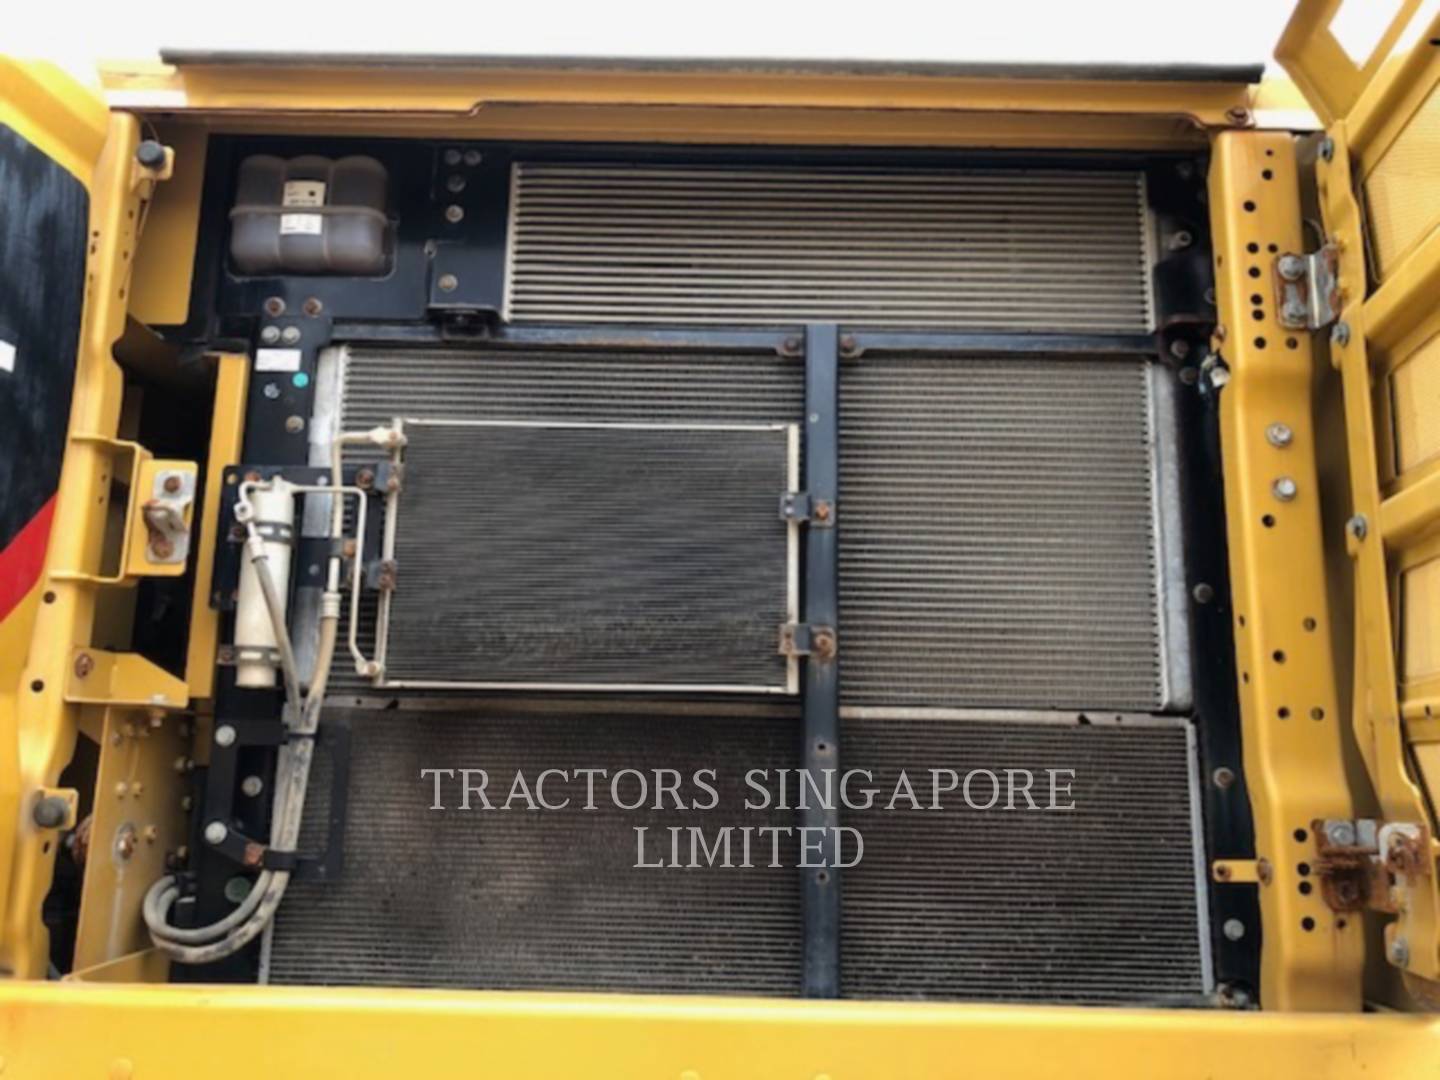 wtk?JHNyYz1hNTg5YWIzMjlkYWVmOTM1ODUzZGIyNDM0MTQ5MTk3ZiYkdHh0PVRSQUNUT1JTJTIwU0lOR0FQT1JFJTIwTElNSVRFRCY1NDg3OQ== 345-07GC | Tractors Singapore